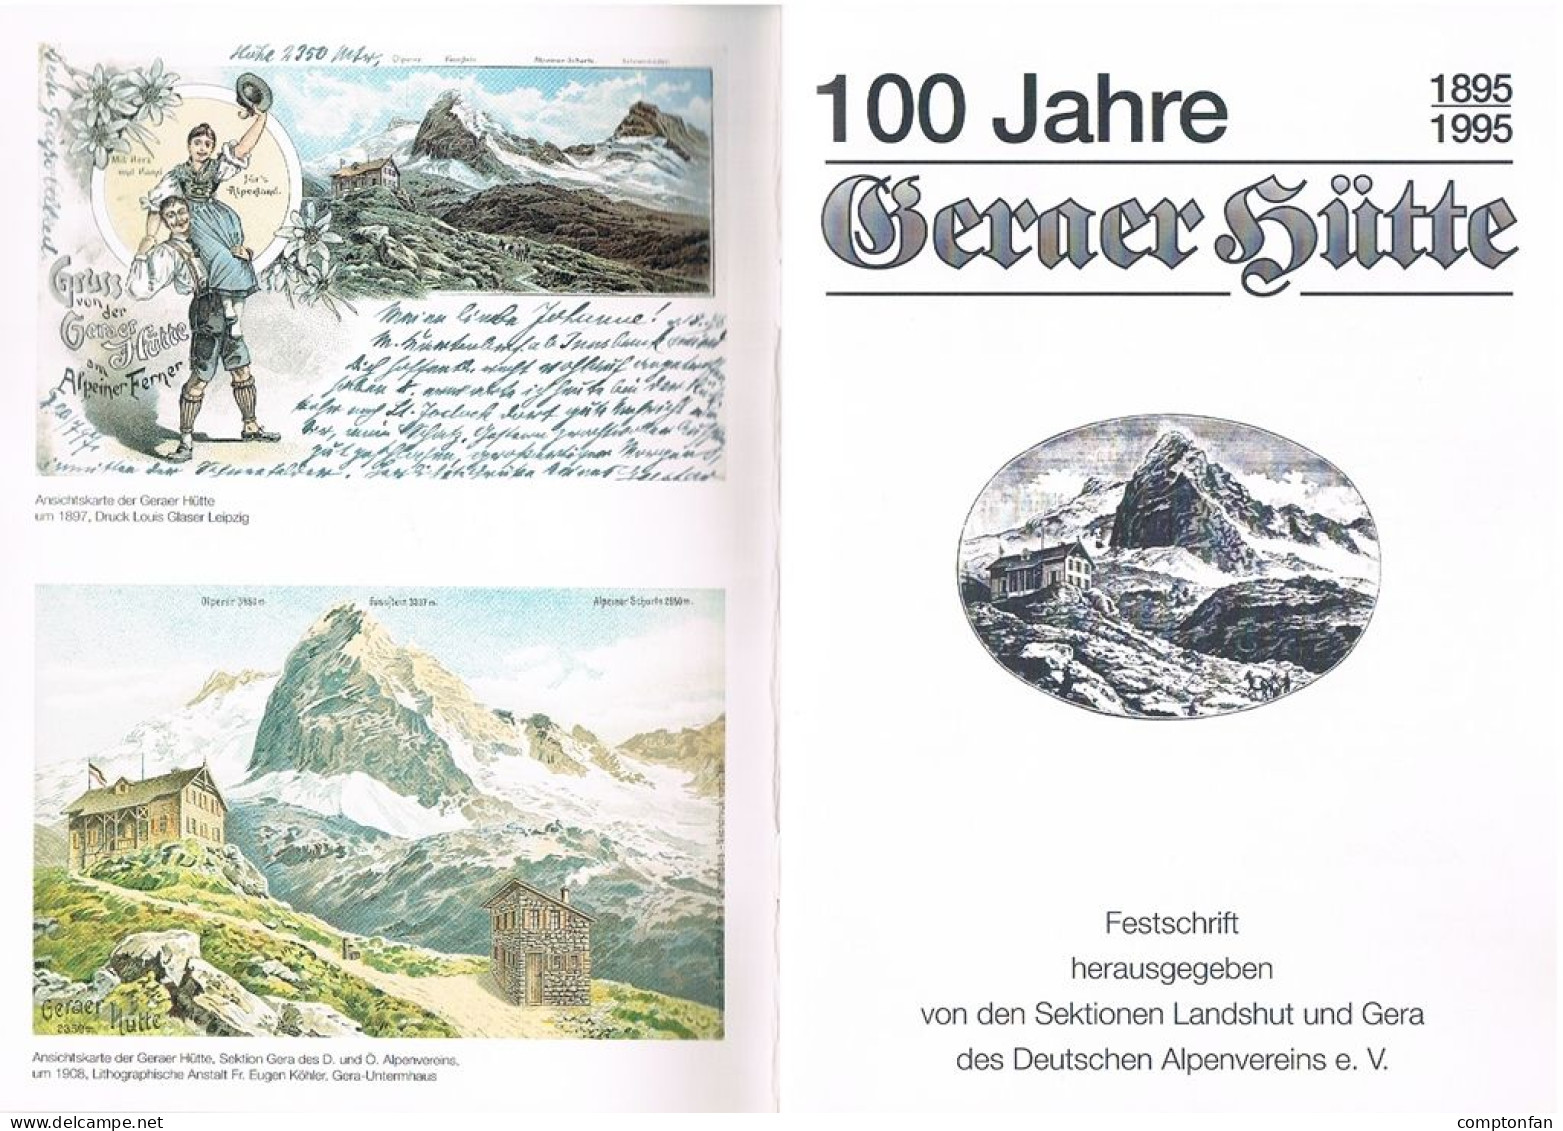 B100 895 Festschrift 100 Jahre Geraer Hütte Deutscher Alpenverein Rarität ! - Alte Bücher